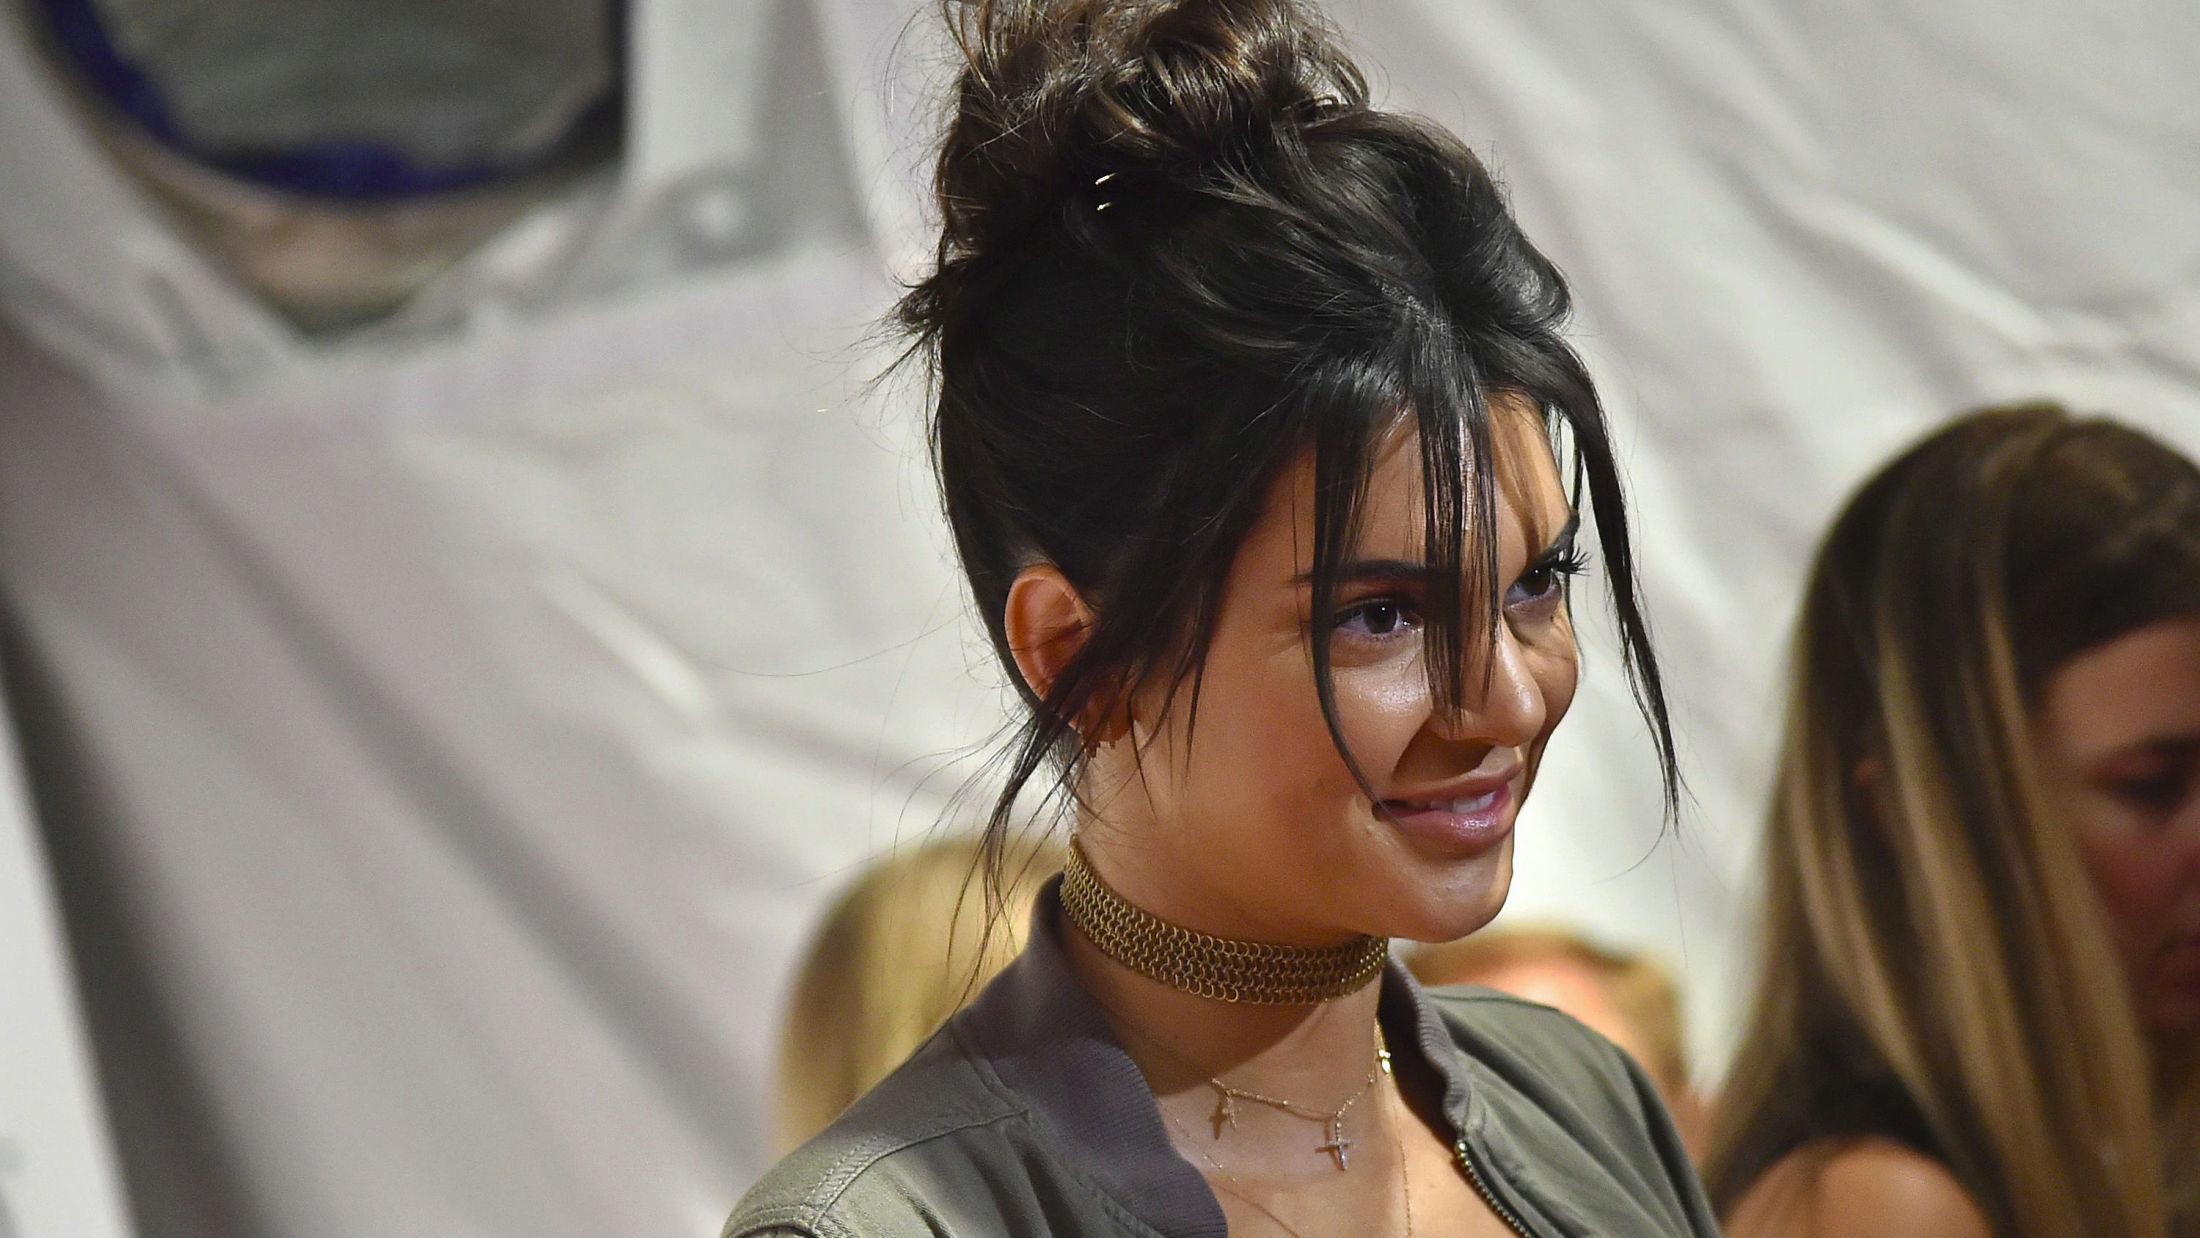 OPPKLIPPET: En av høstens store trender er kort, oppklippet «lob». Kendall Jenner viste seg nylig med rufsete og oppklippet hår i forbindelse med oppstarten av New York Fashion Week. Foto: Getty Images